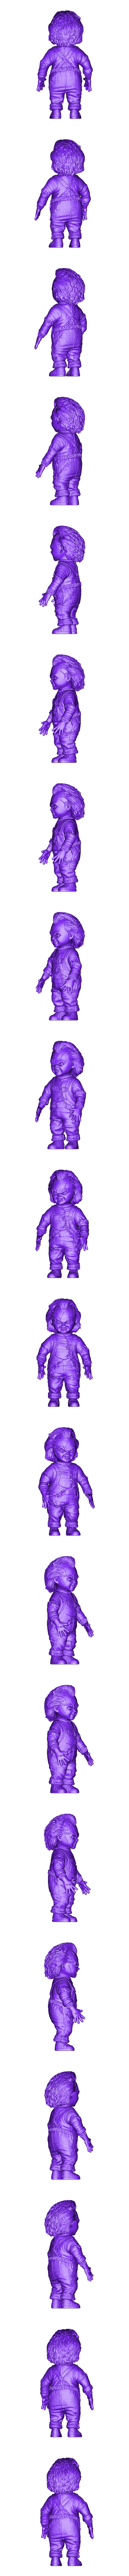 CHUCKY DOLL.obj Télécharger le fichier OBJ gratuit Poupée Chucky • Objet à imprimer en 3D, sajikwitt